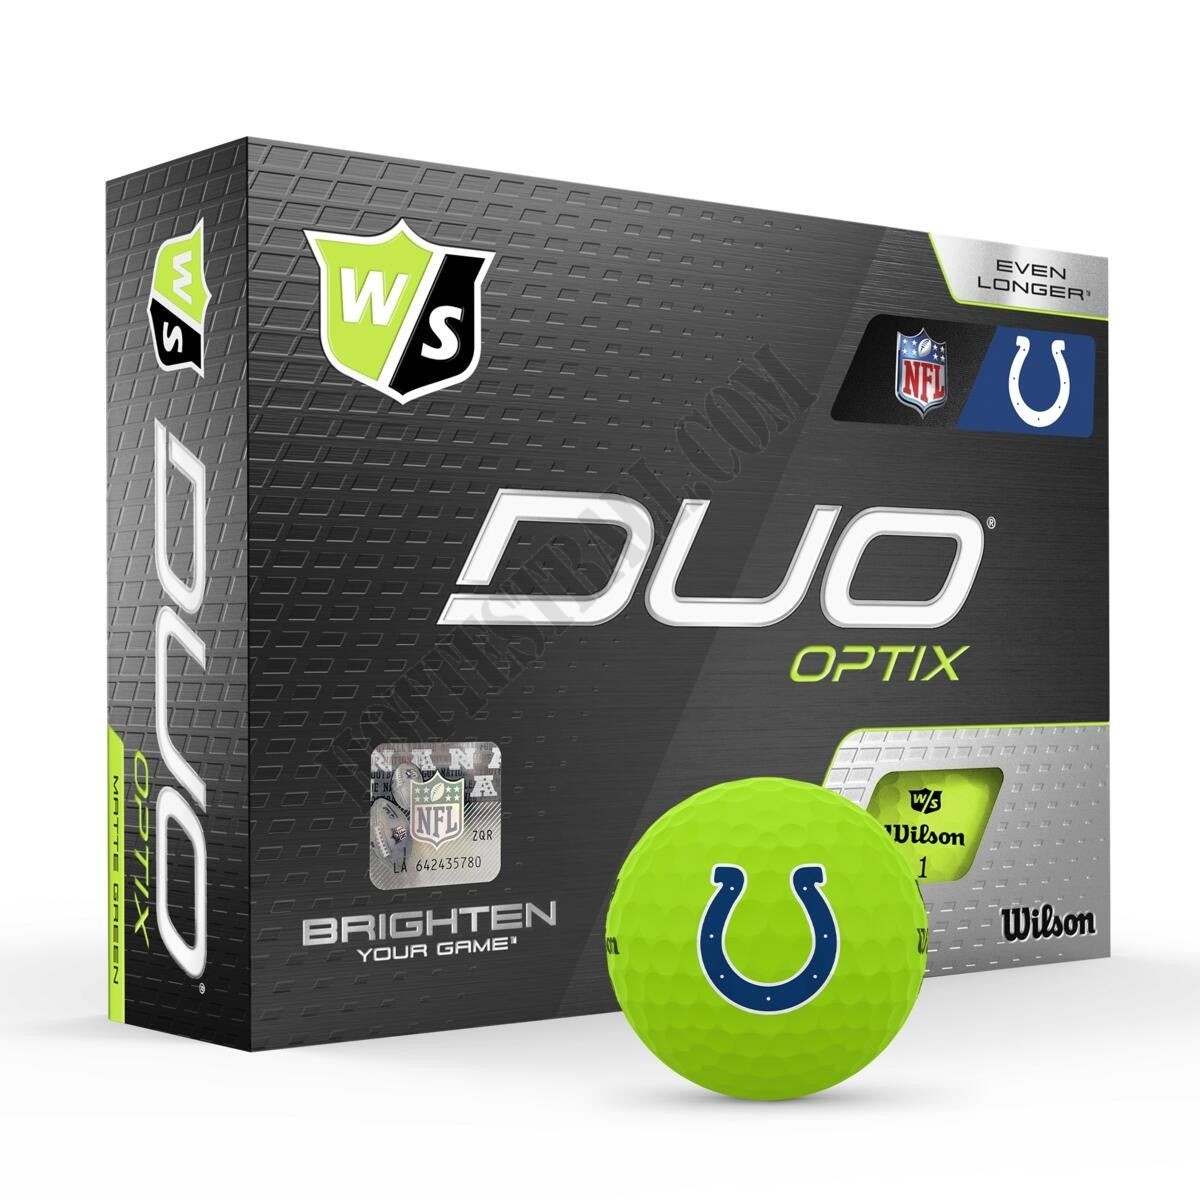 Duo Optix NFL Golf Balls - Indianapolis Colts ● Wilson Promotions - Duo Optix NFL Golf Balls - Indianapolis Colts ● Wilson Promotions